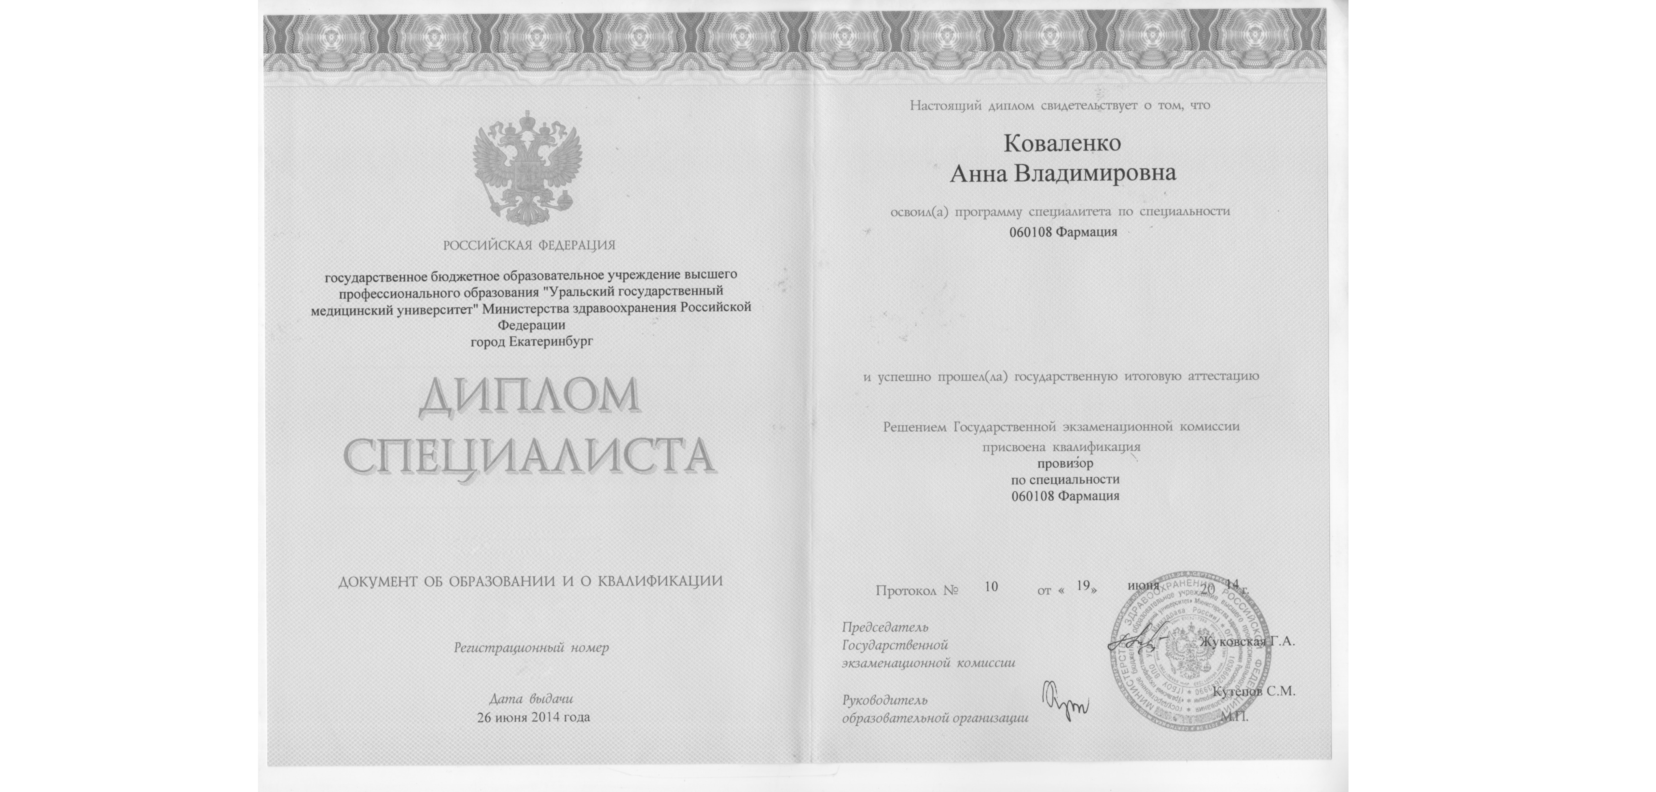 Сертификат института Гештальта